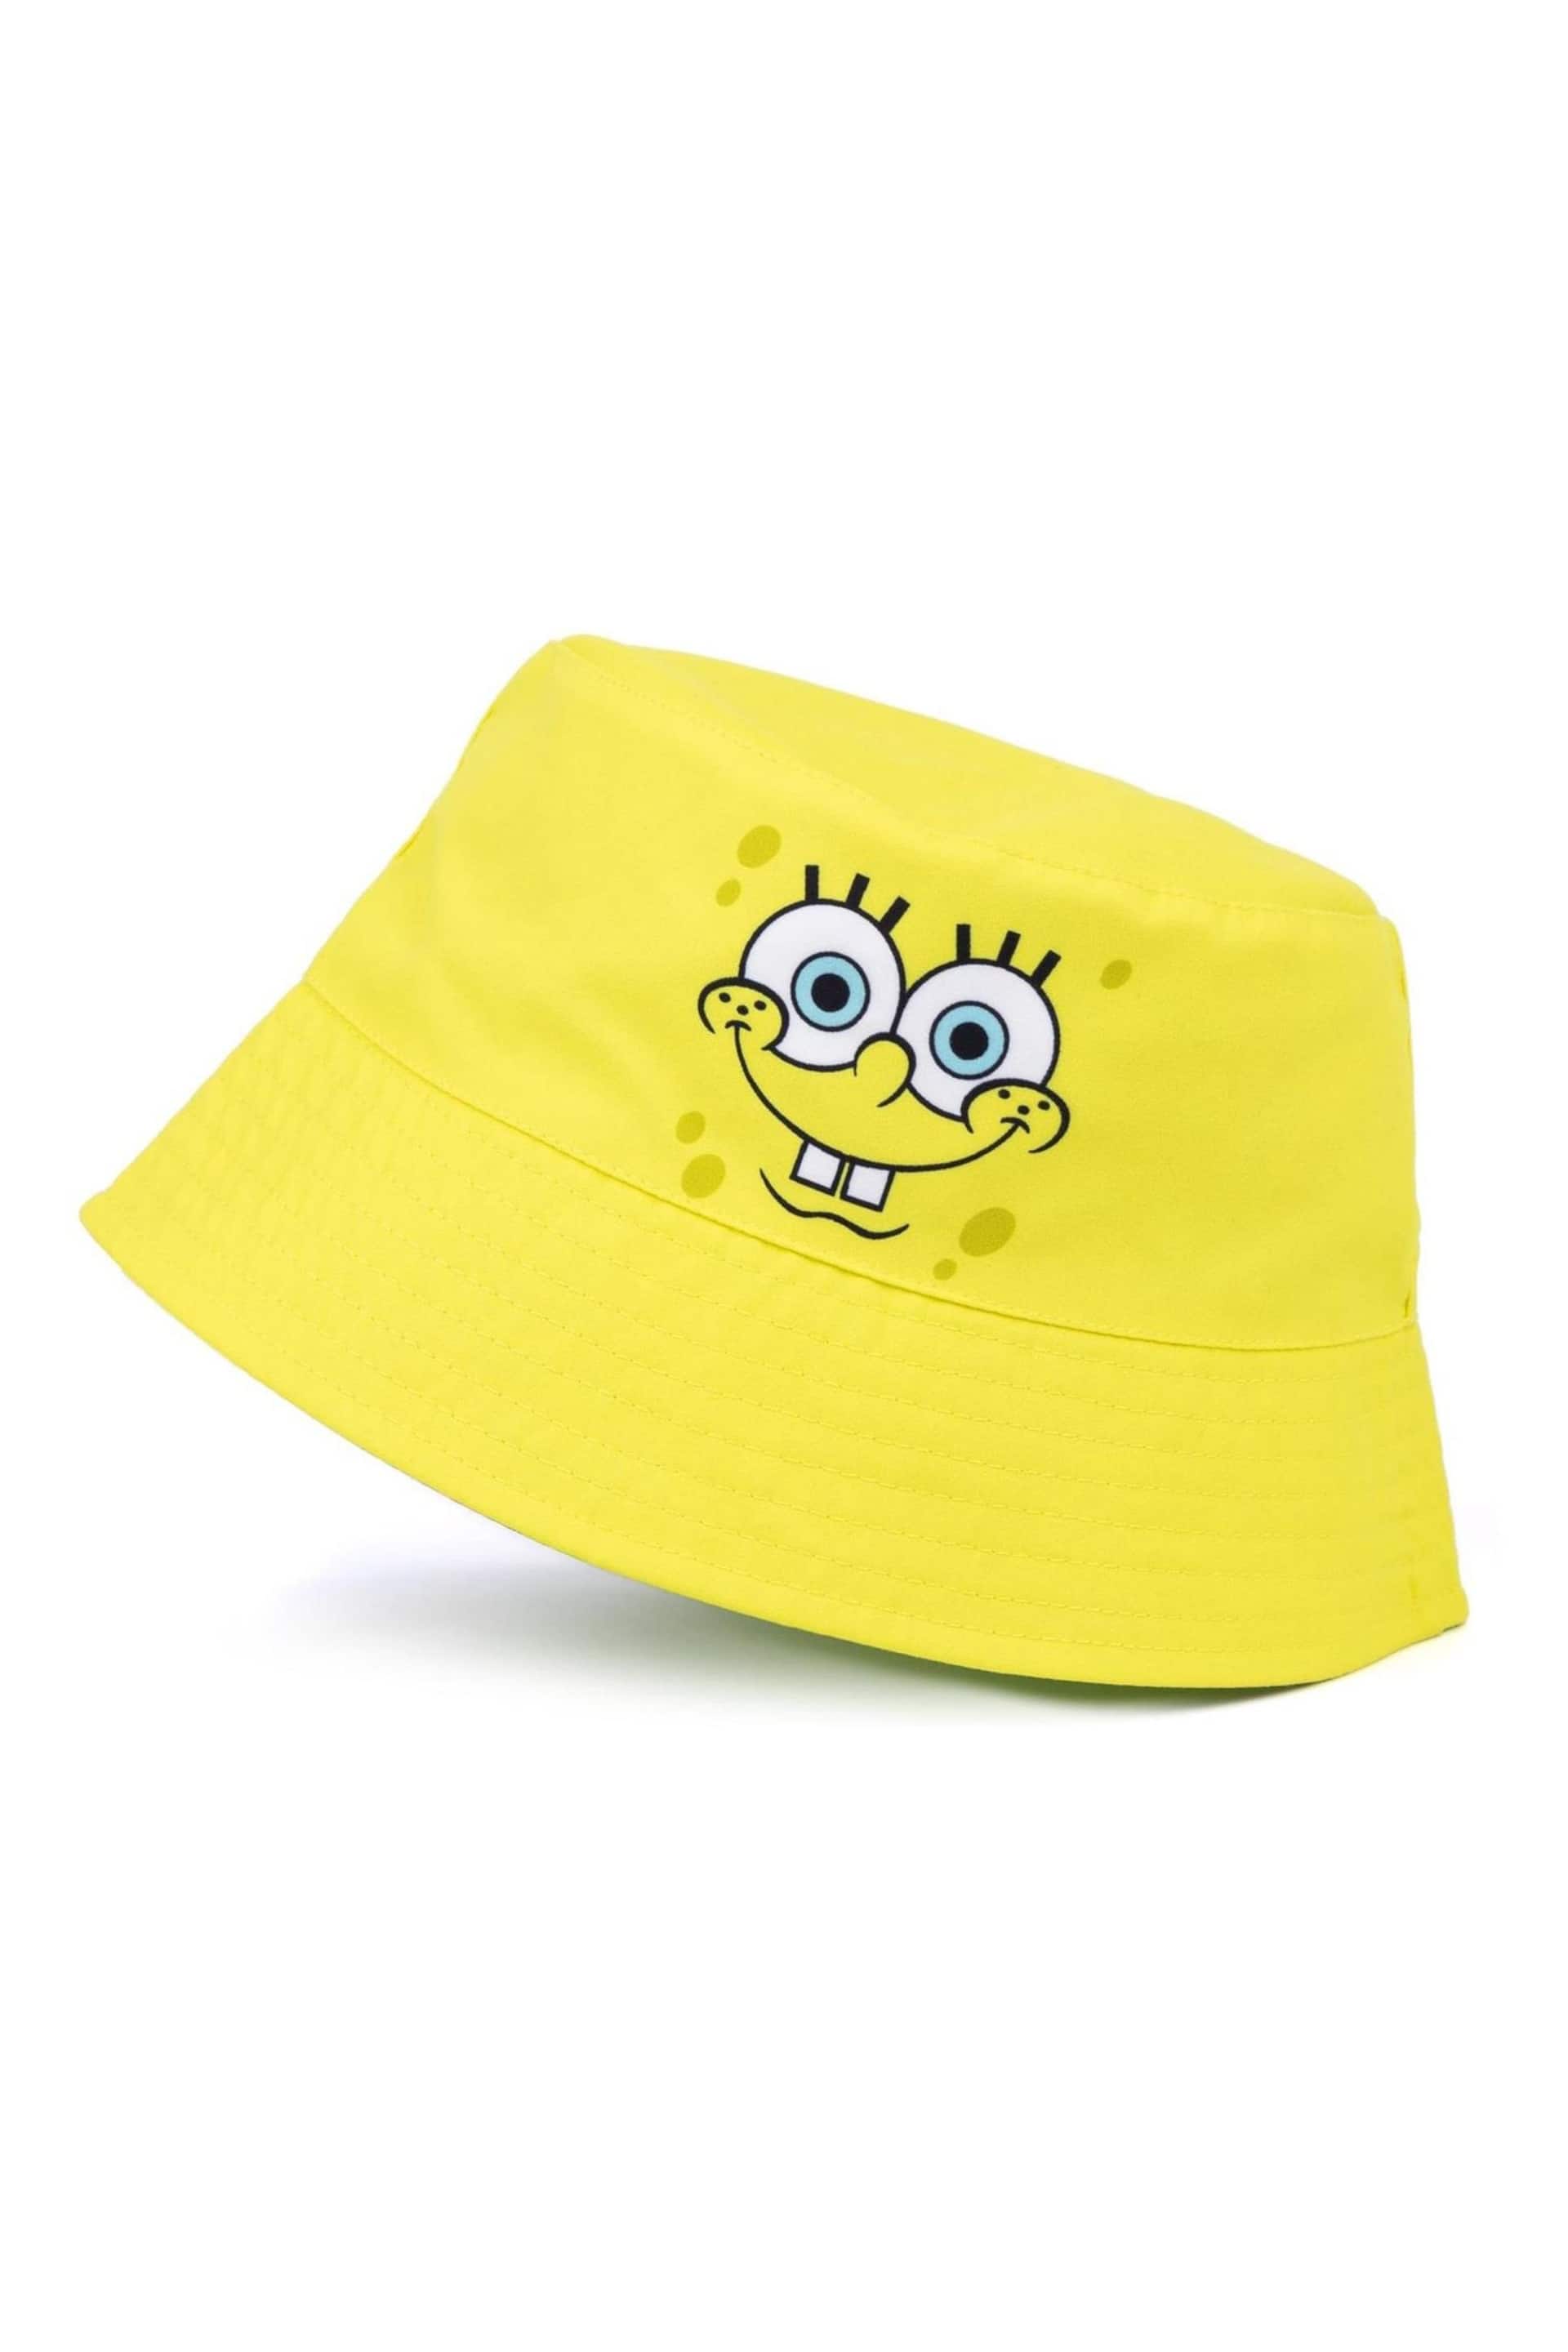 Vanilla Underground Yellow Spongebob Licensing Reversible Bucket Kids Hat - Image 2 of 5